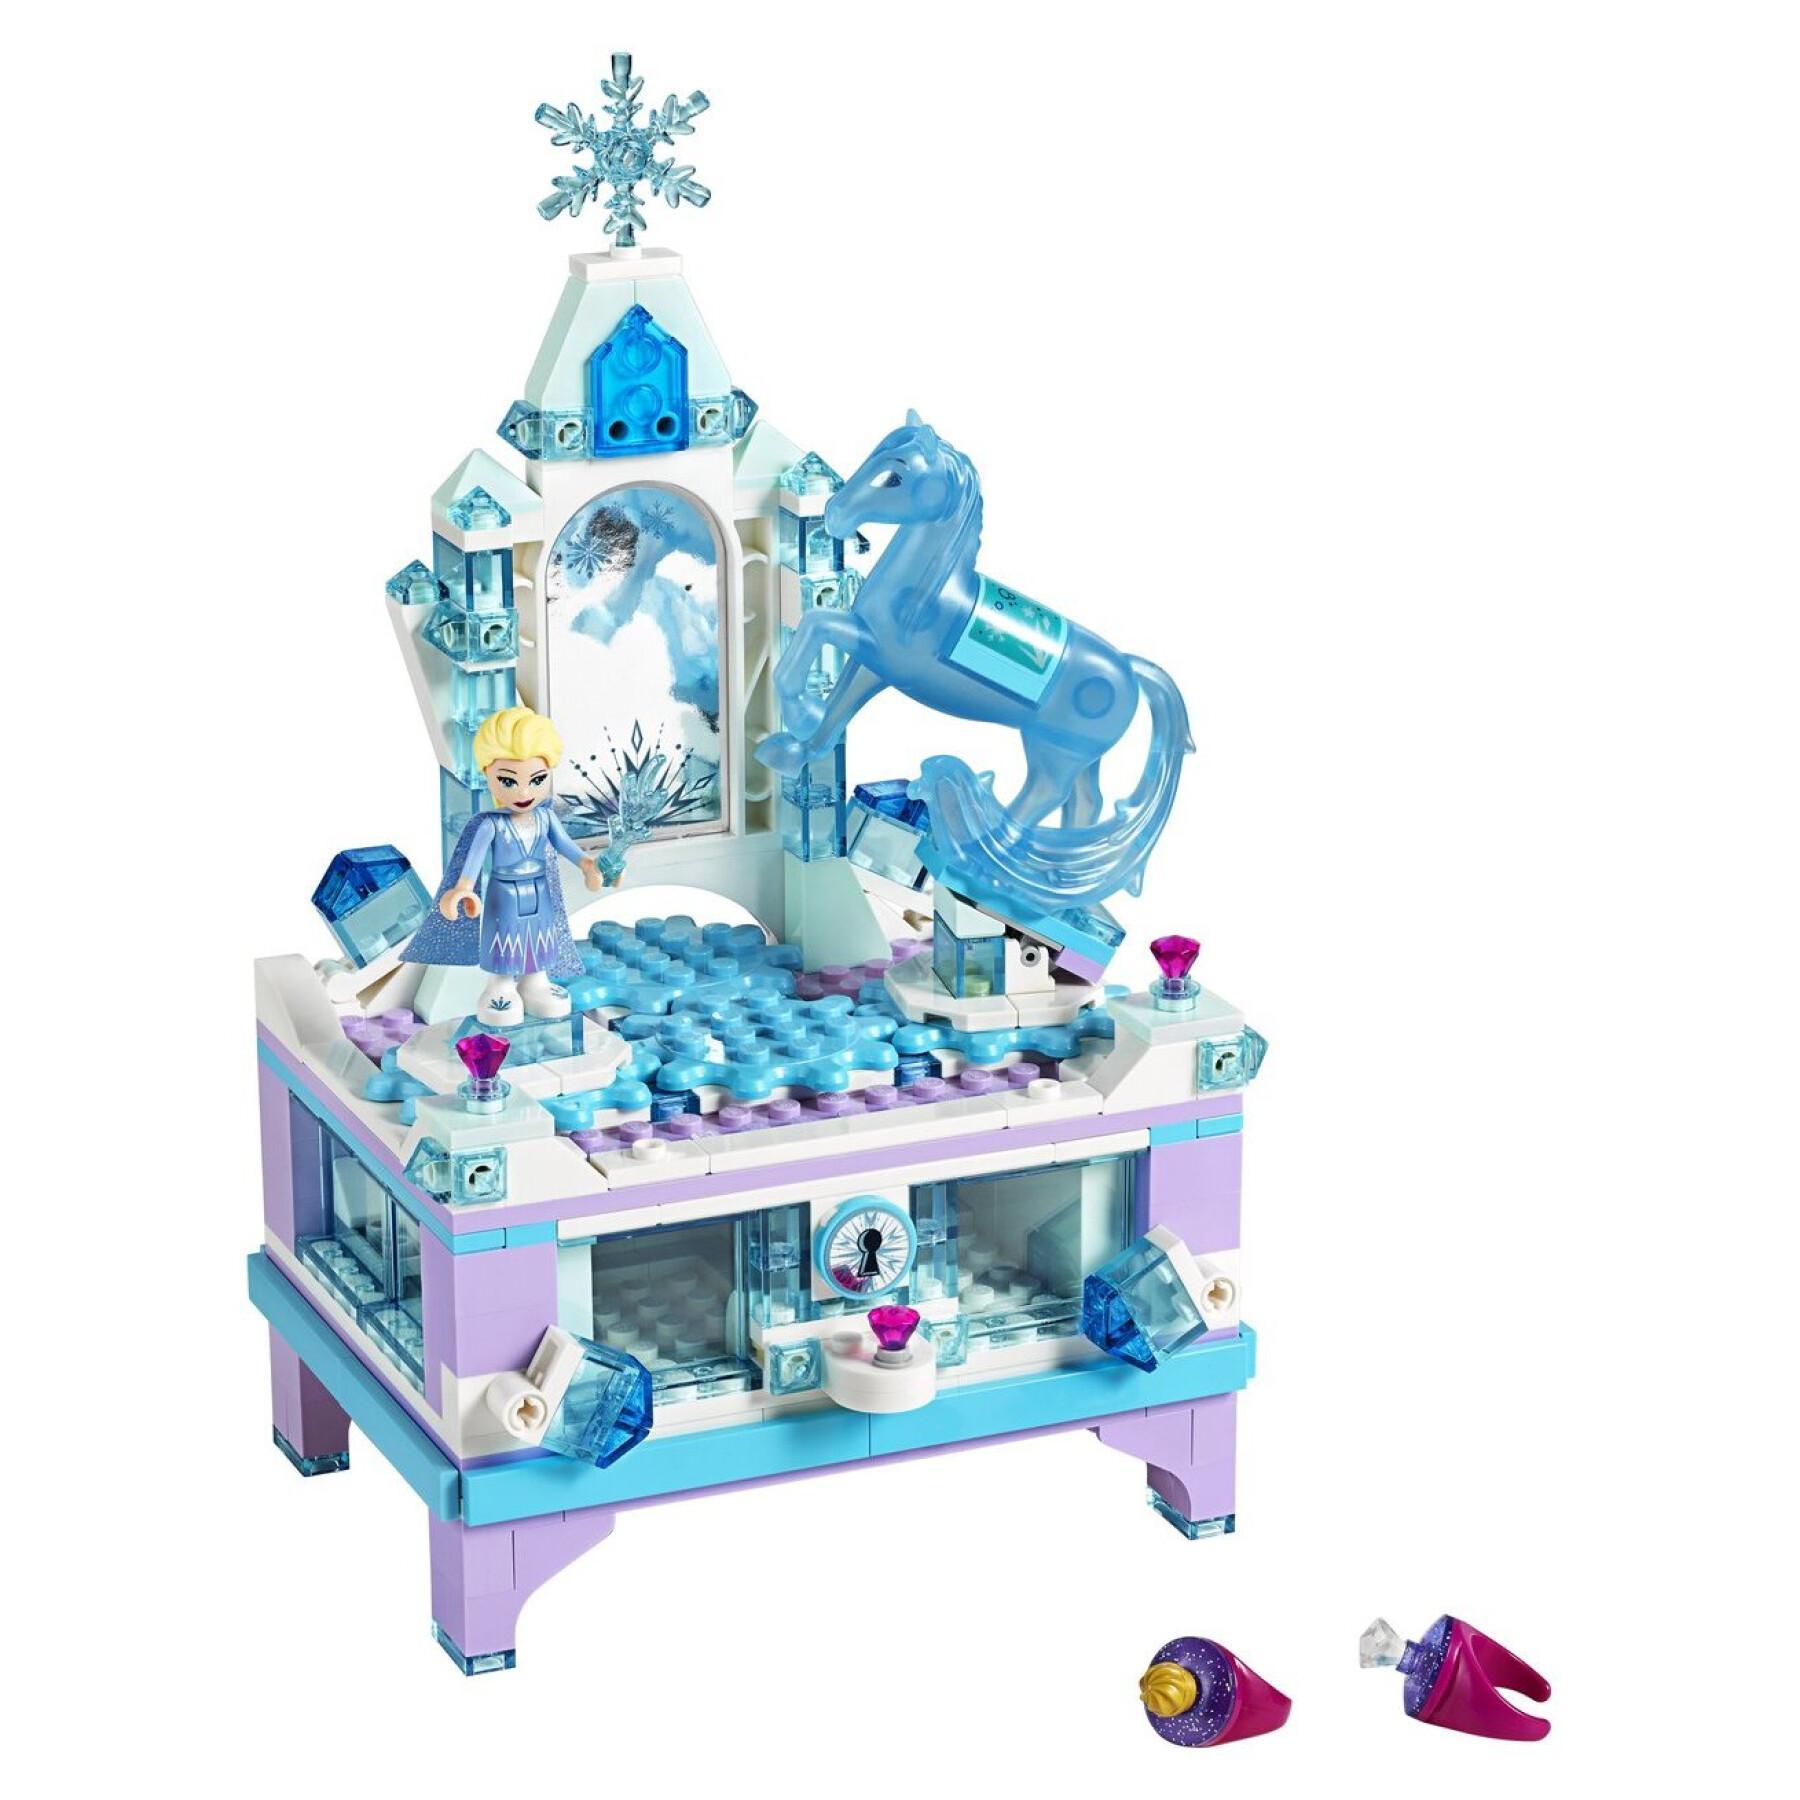 Caixa de jóias Lego Elsa Frozen 2